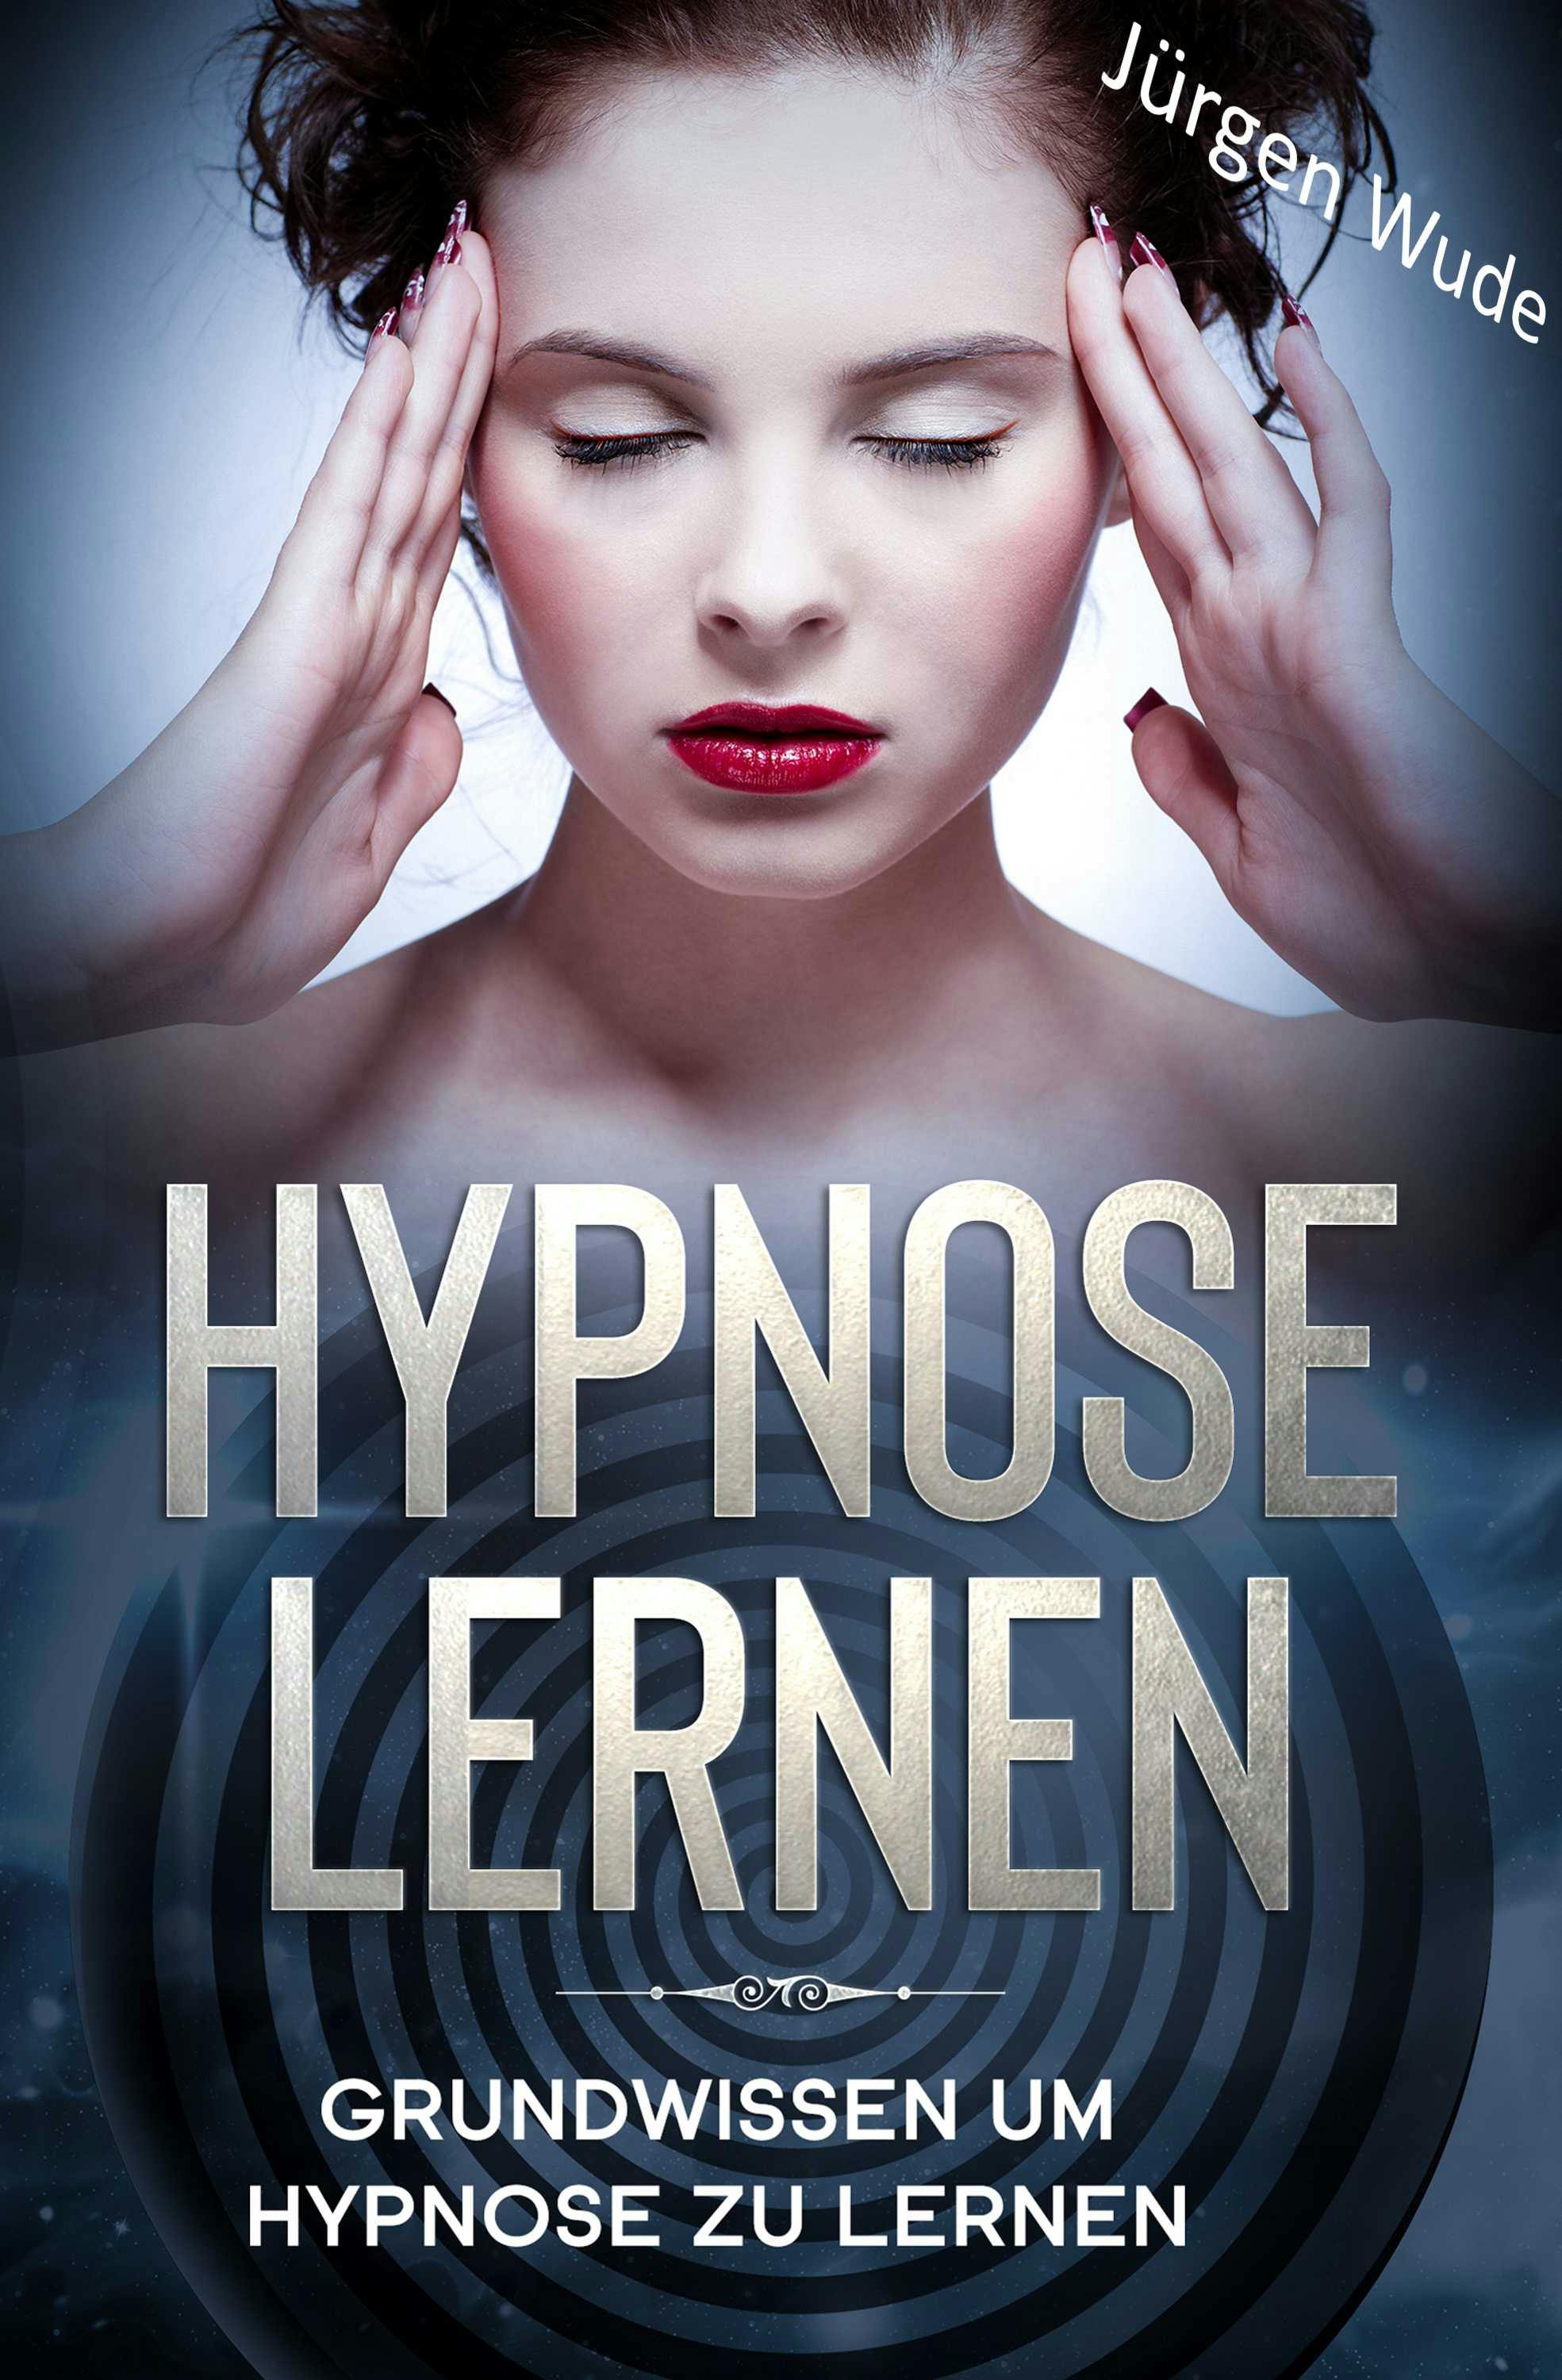 Hypnose lernen: Grundwissen um Hypnose zu lernen - undefined